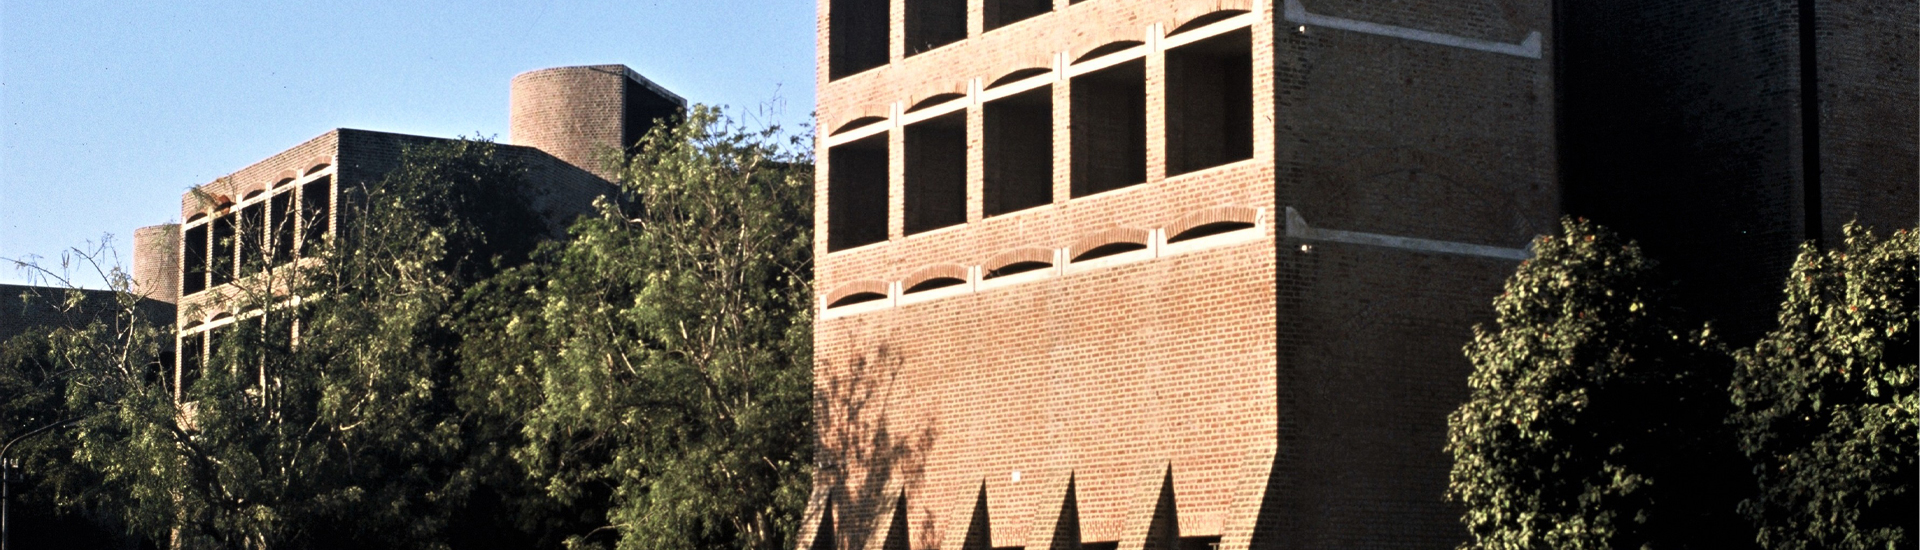 Institut de Management d'Ahmedabad © William JR Curtis, 1985